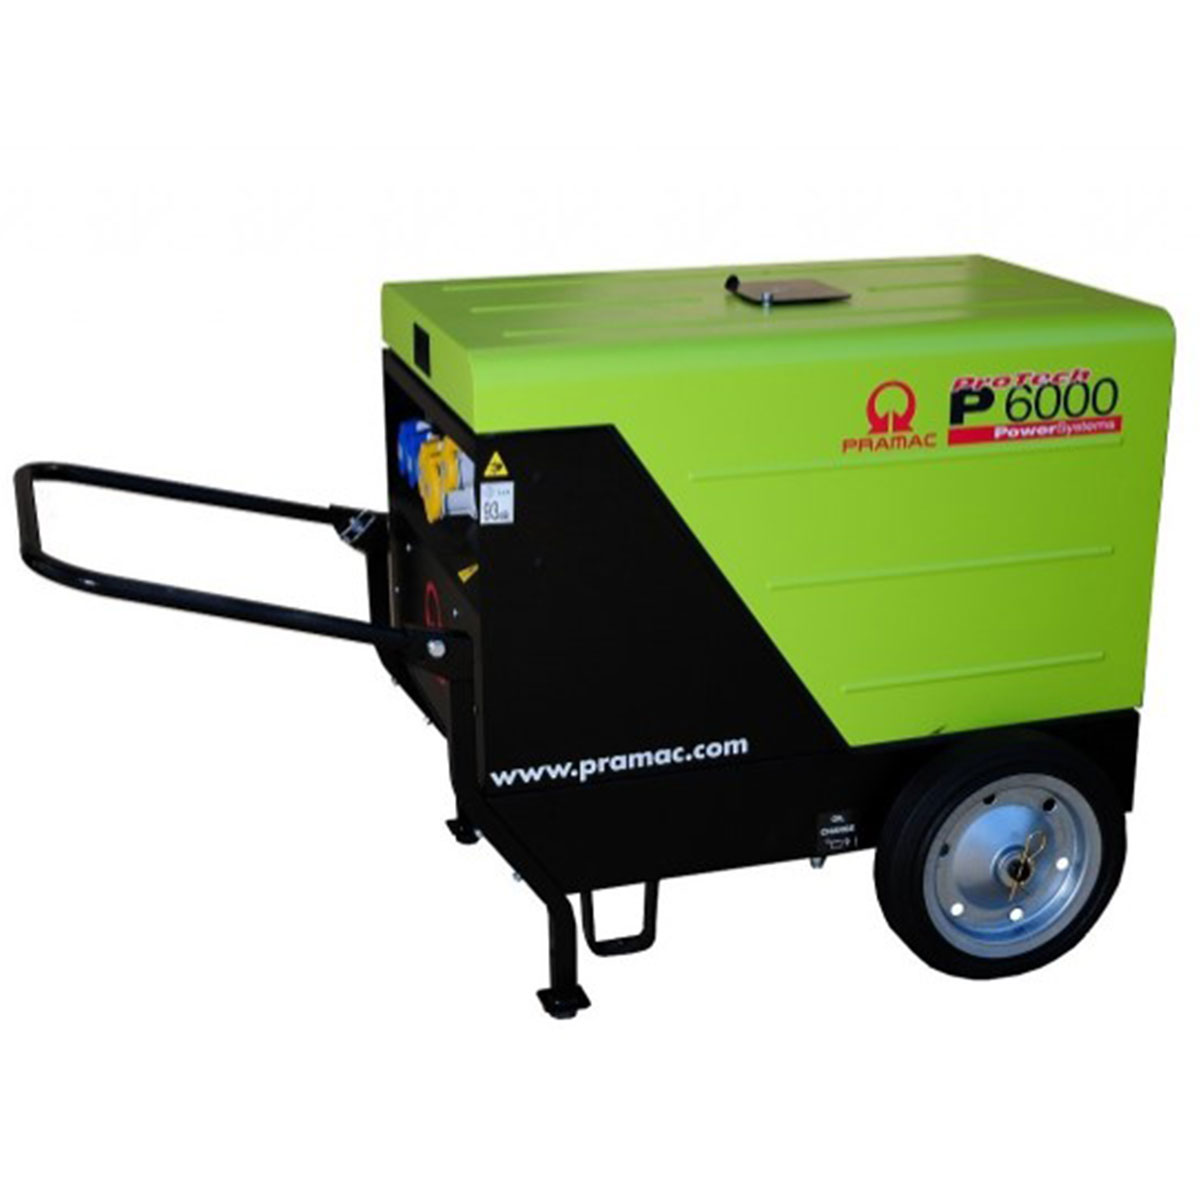 Pramac P6000 Electric Start Silent Diesel Generator inc. Wheel Kit